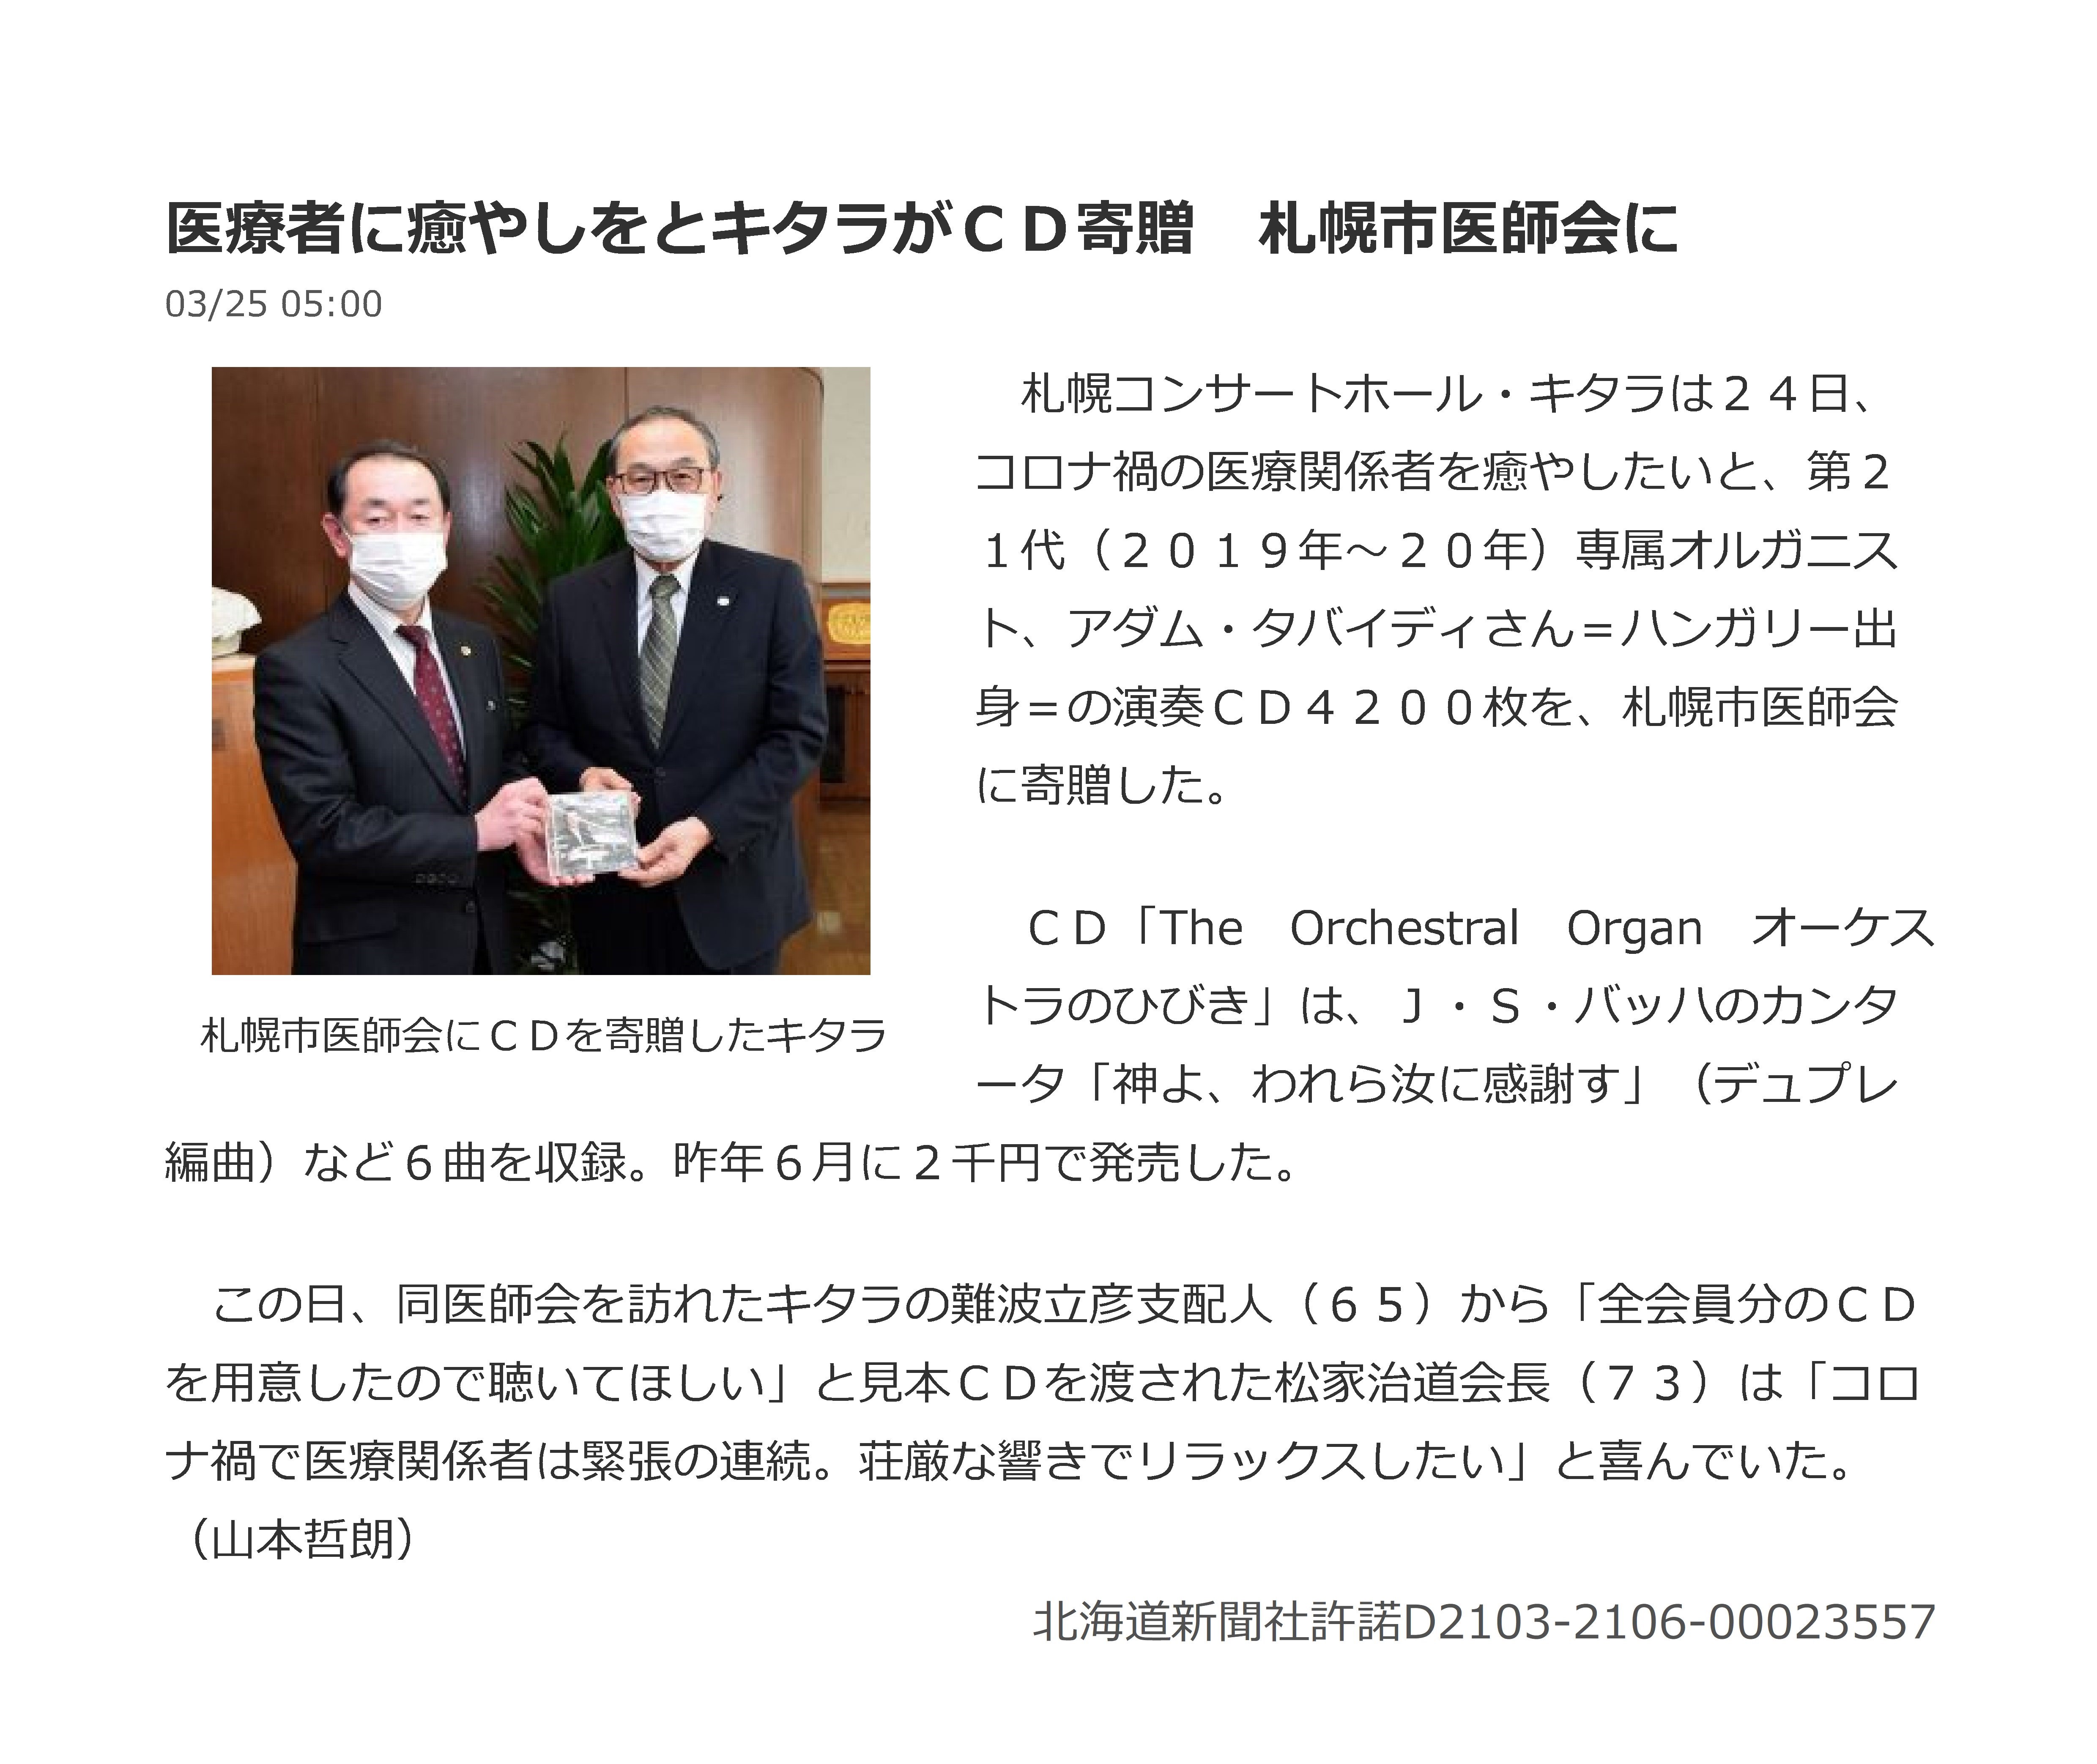 札幌コンサートホールKitara様からのCDの寄付について